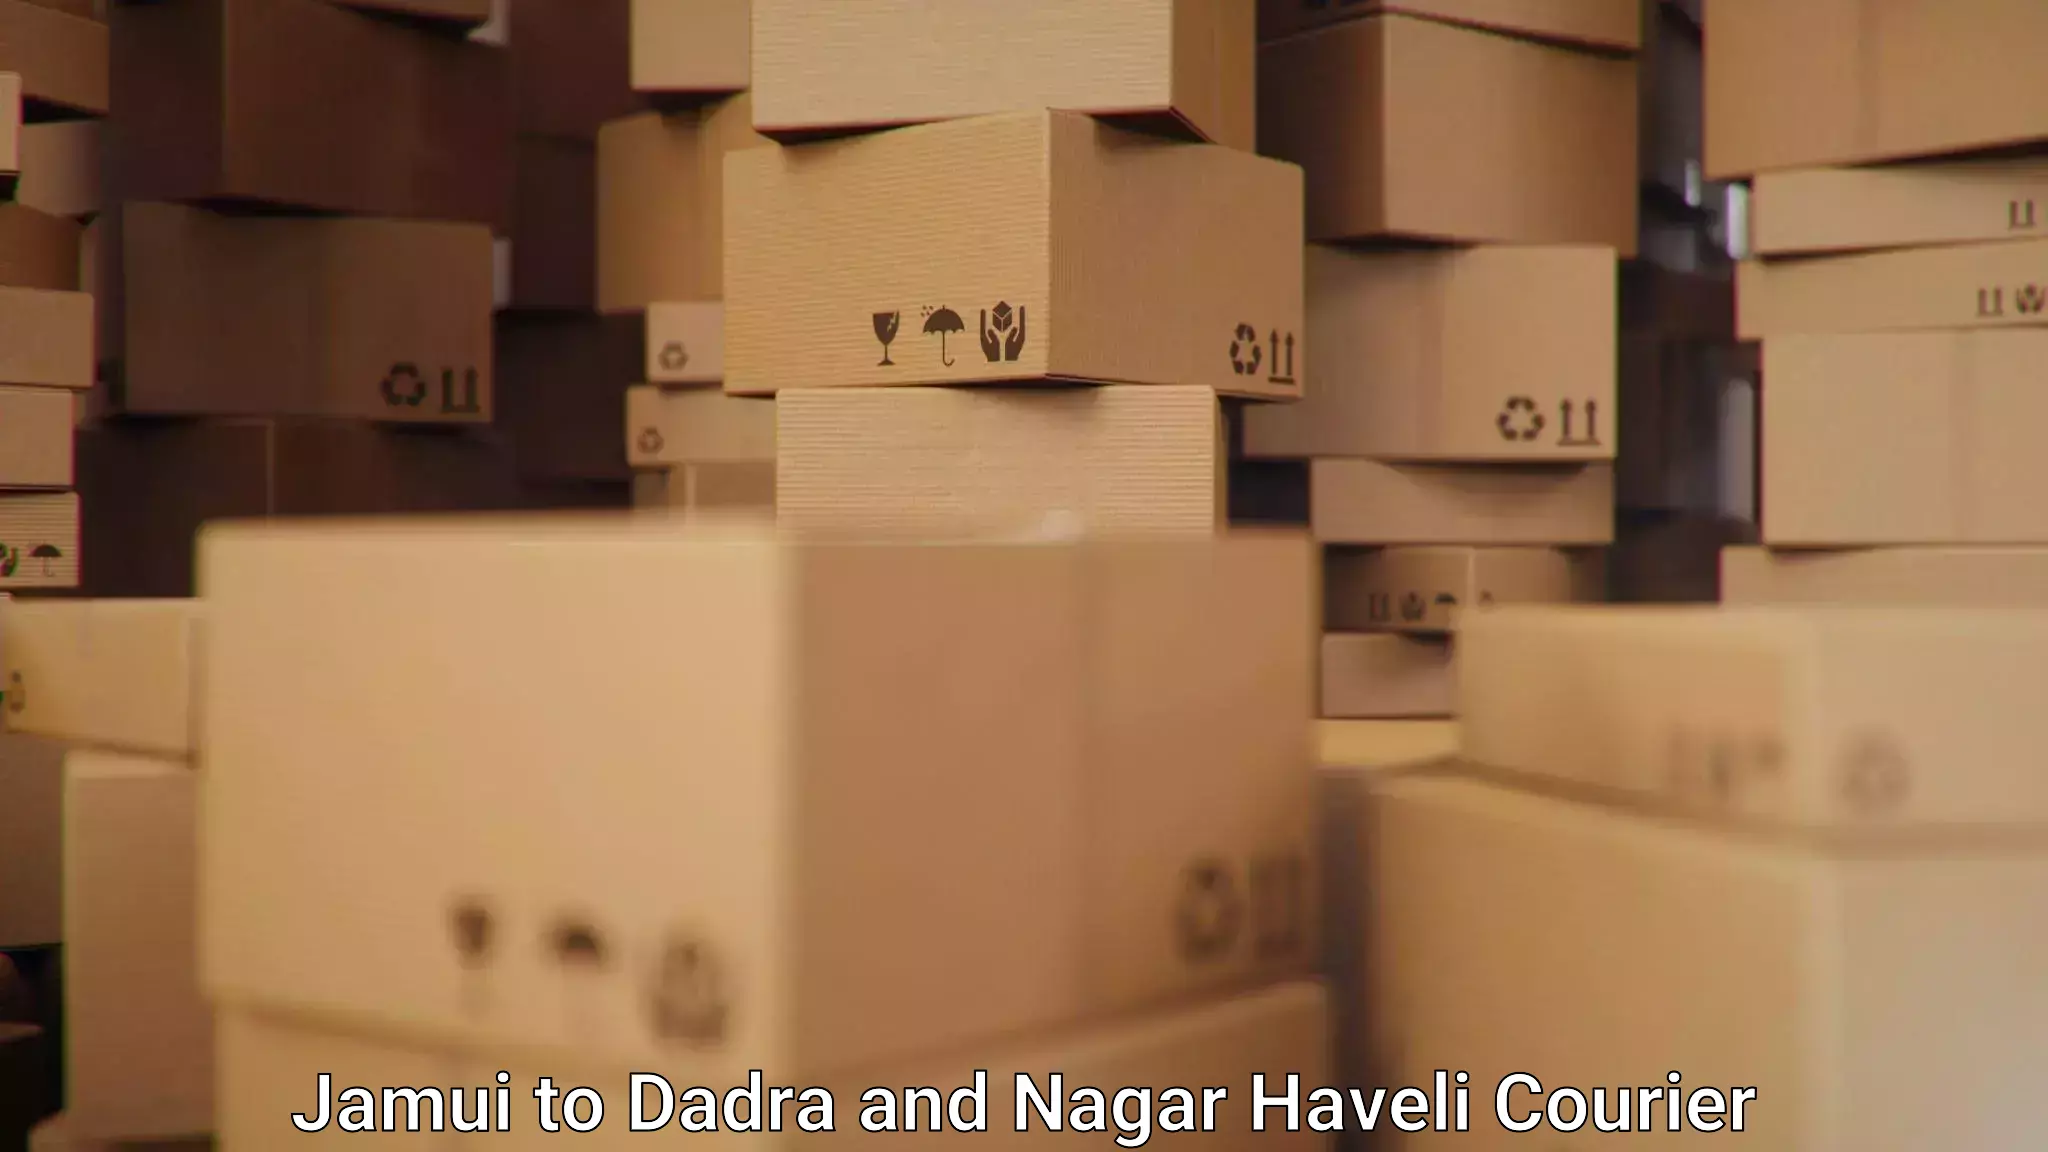 Business shipping needs Jamui to Dadra and Nagar Haveli